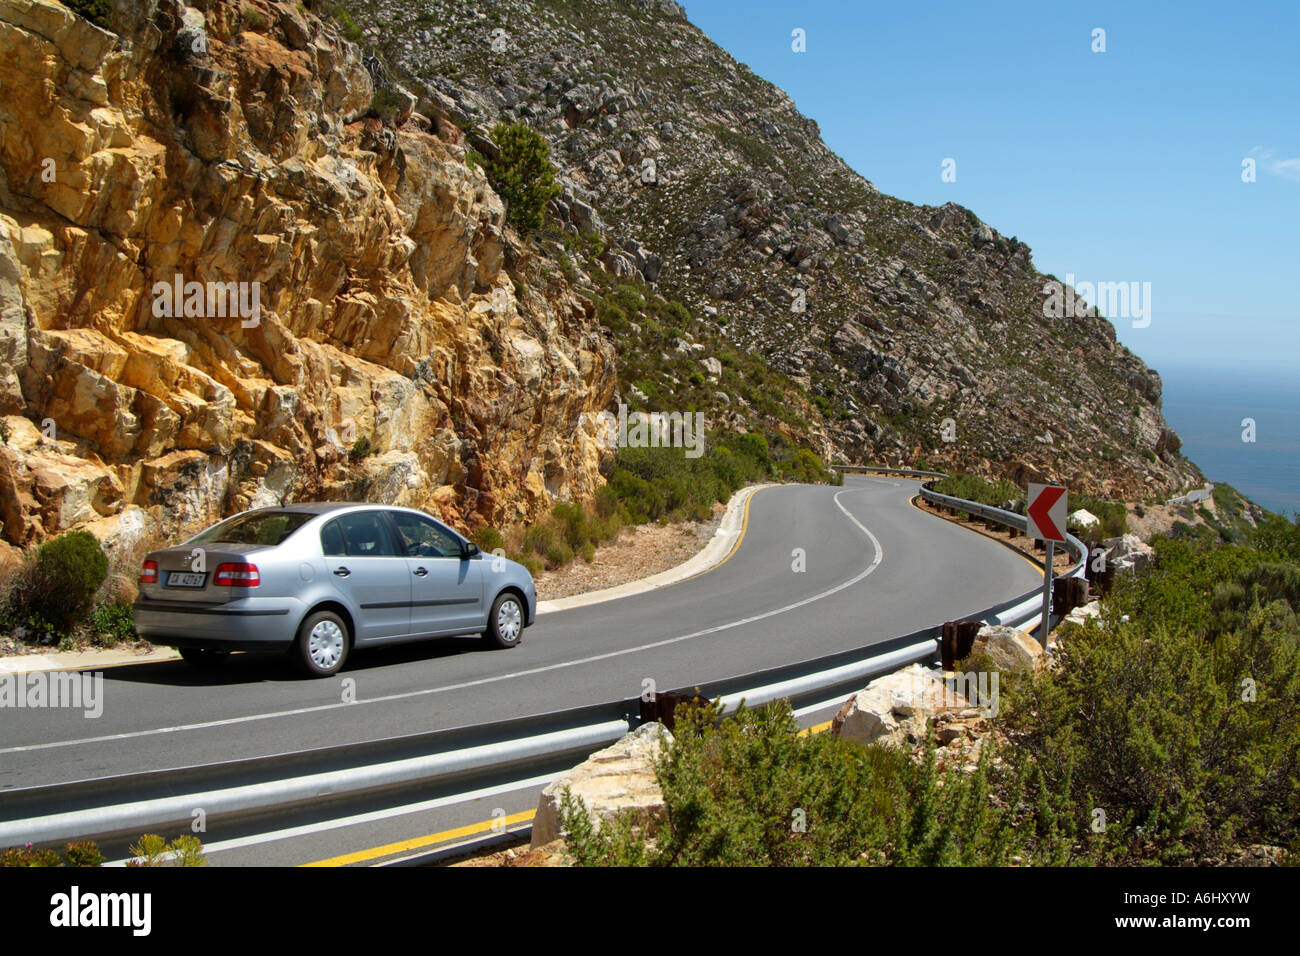 La conduite sur une route de montagne dans le western cape Afrique du Sud Banque D'Images